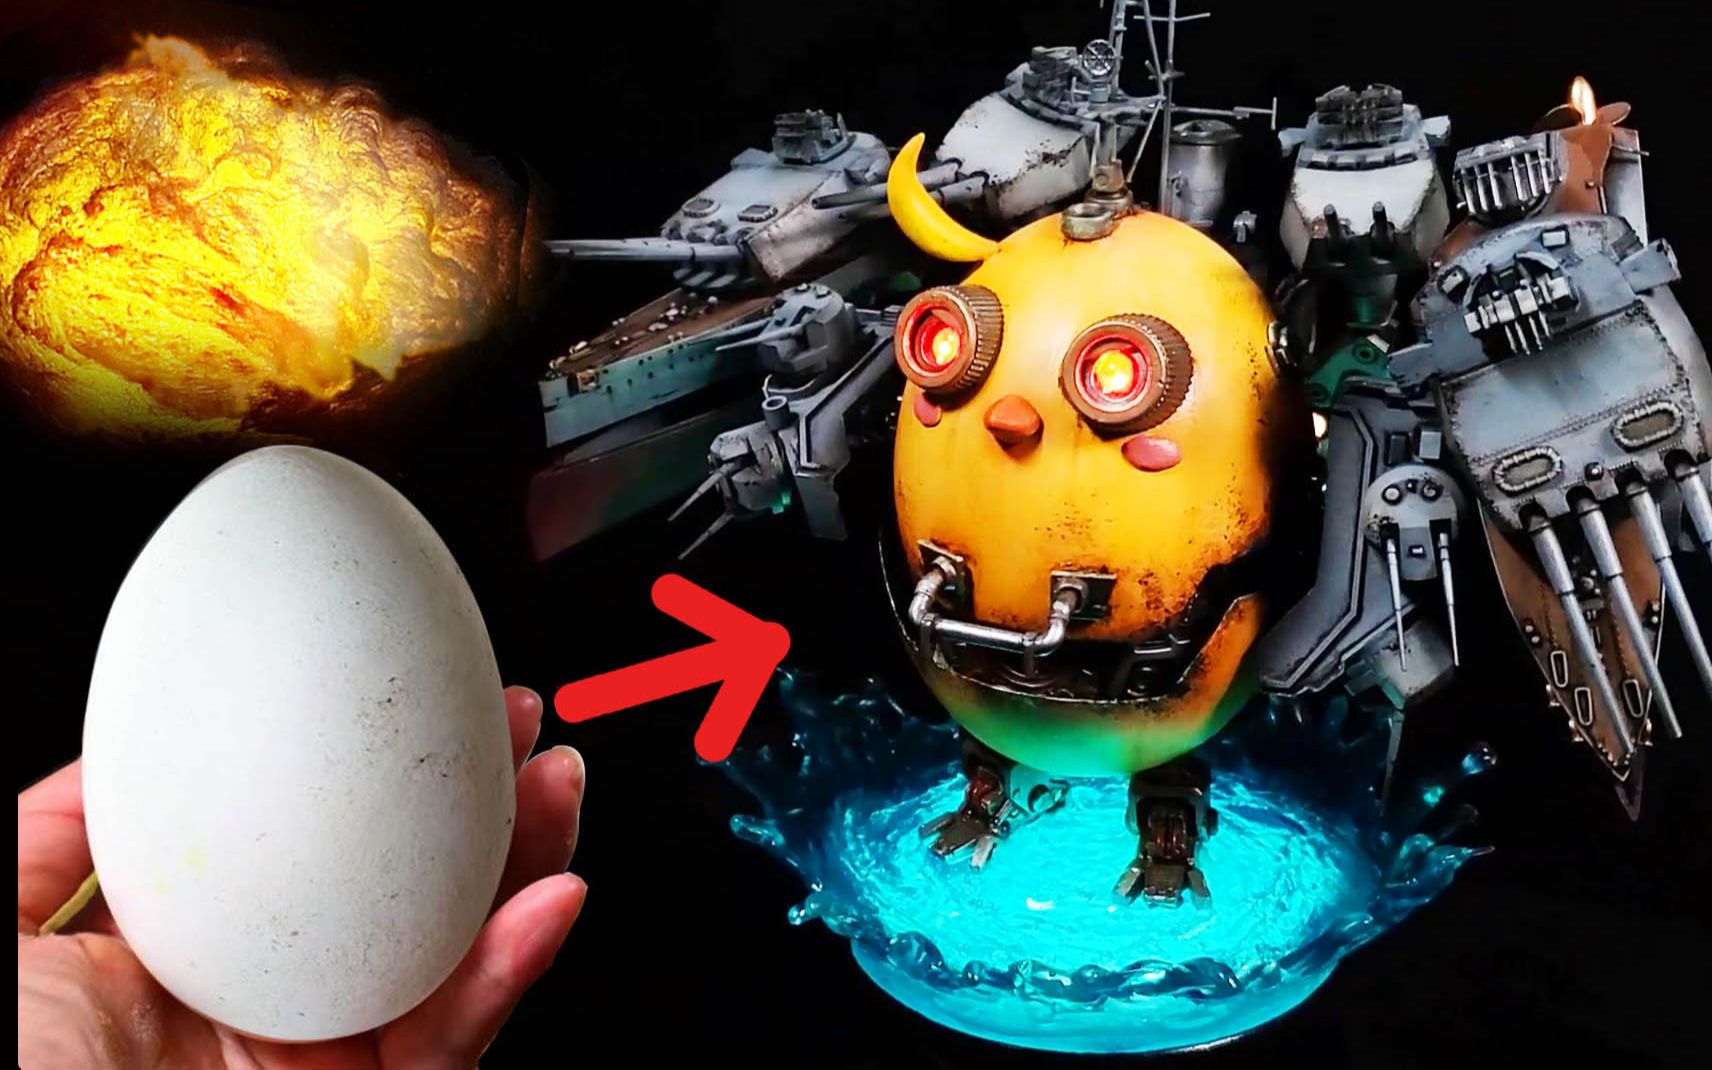 吃完的蛋壳不要丢 裹上油漆 游戏玩家惊呆了